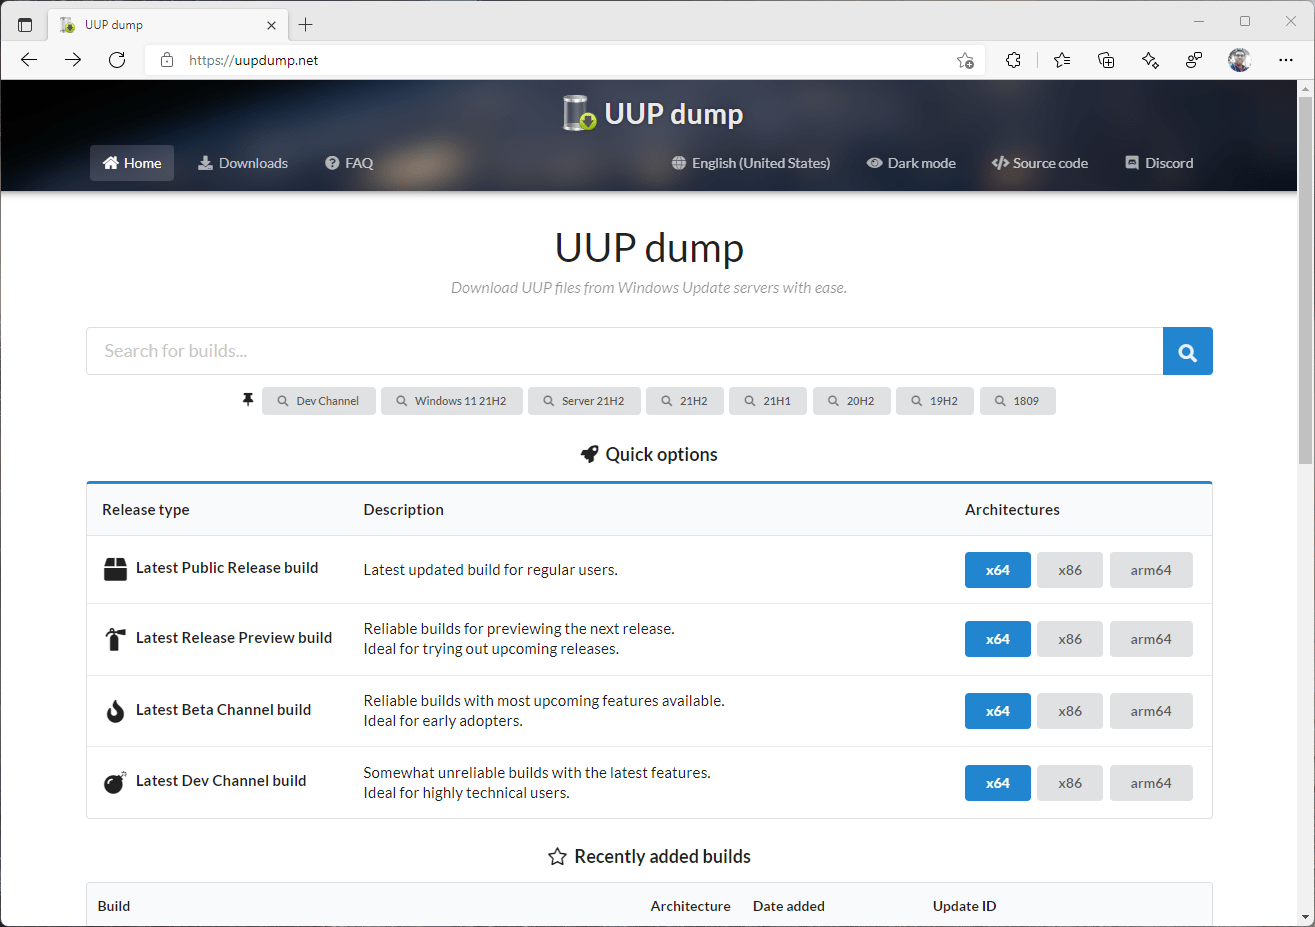 The uupdump.net website